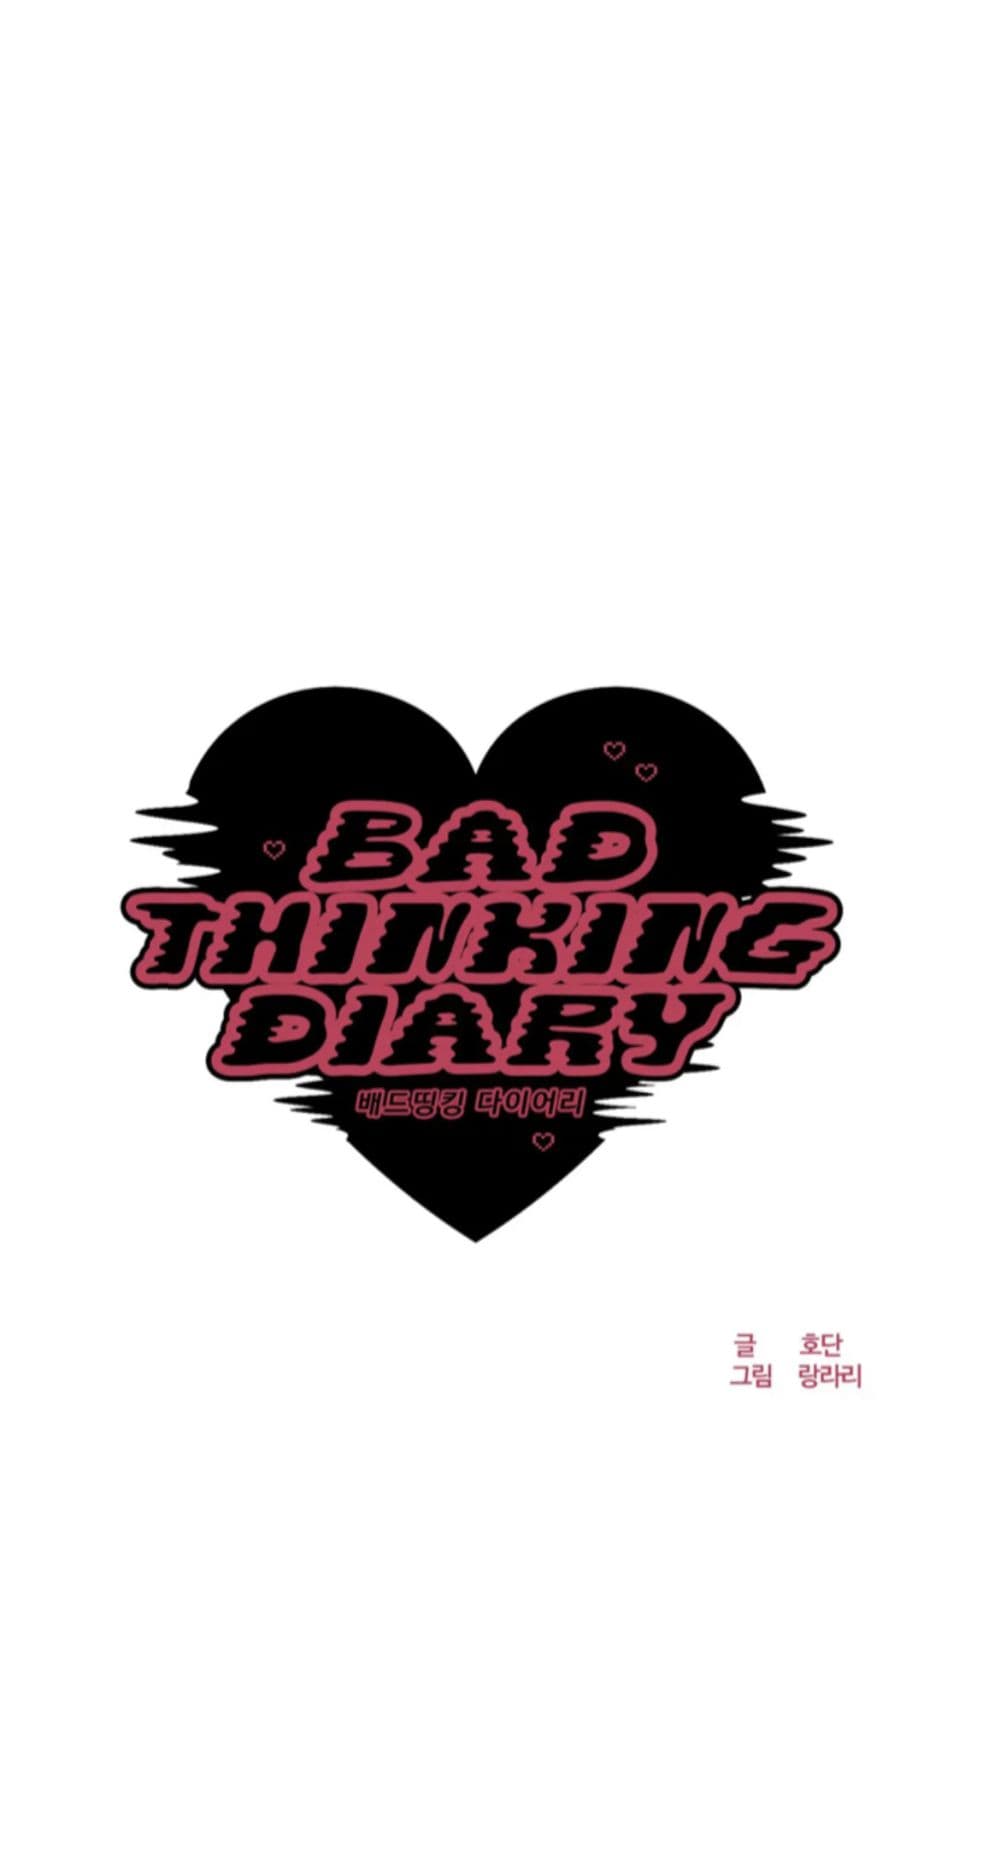 Bad Thinking Dairy 12 (7)